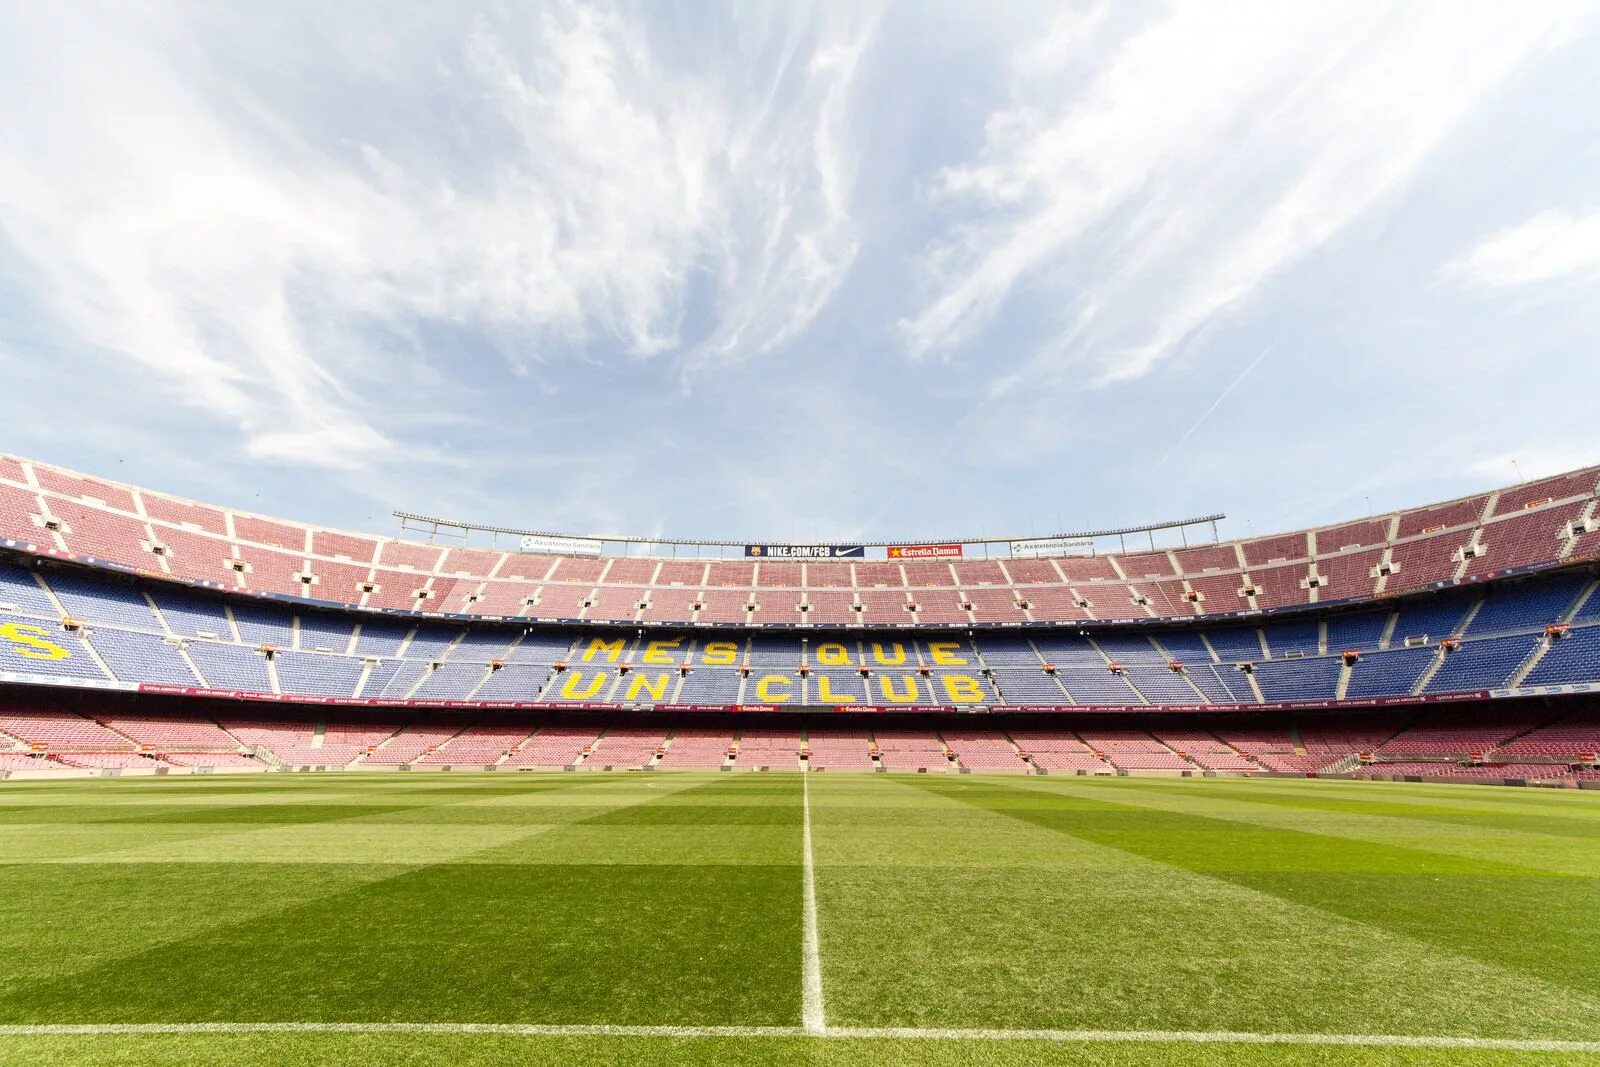 Камп нов. Камп ноу стадион. Стадион Камп ноу в Барселоне. Камп ноу стадион 2023. Футбольное поле стадиона Камп ноу.